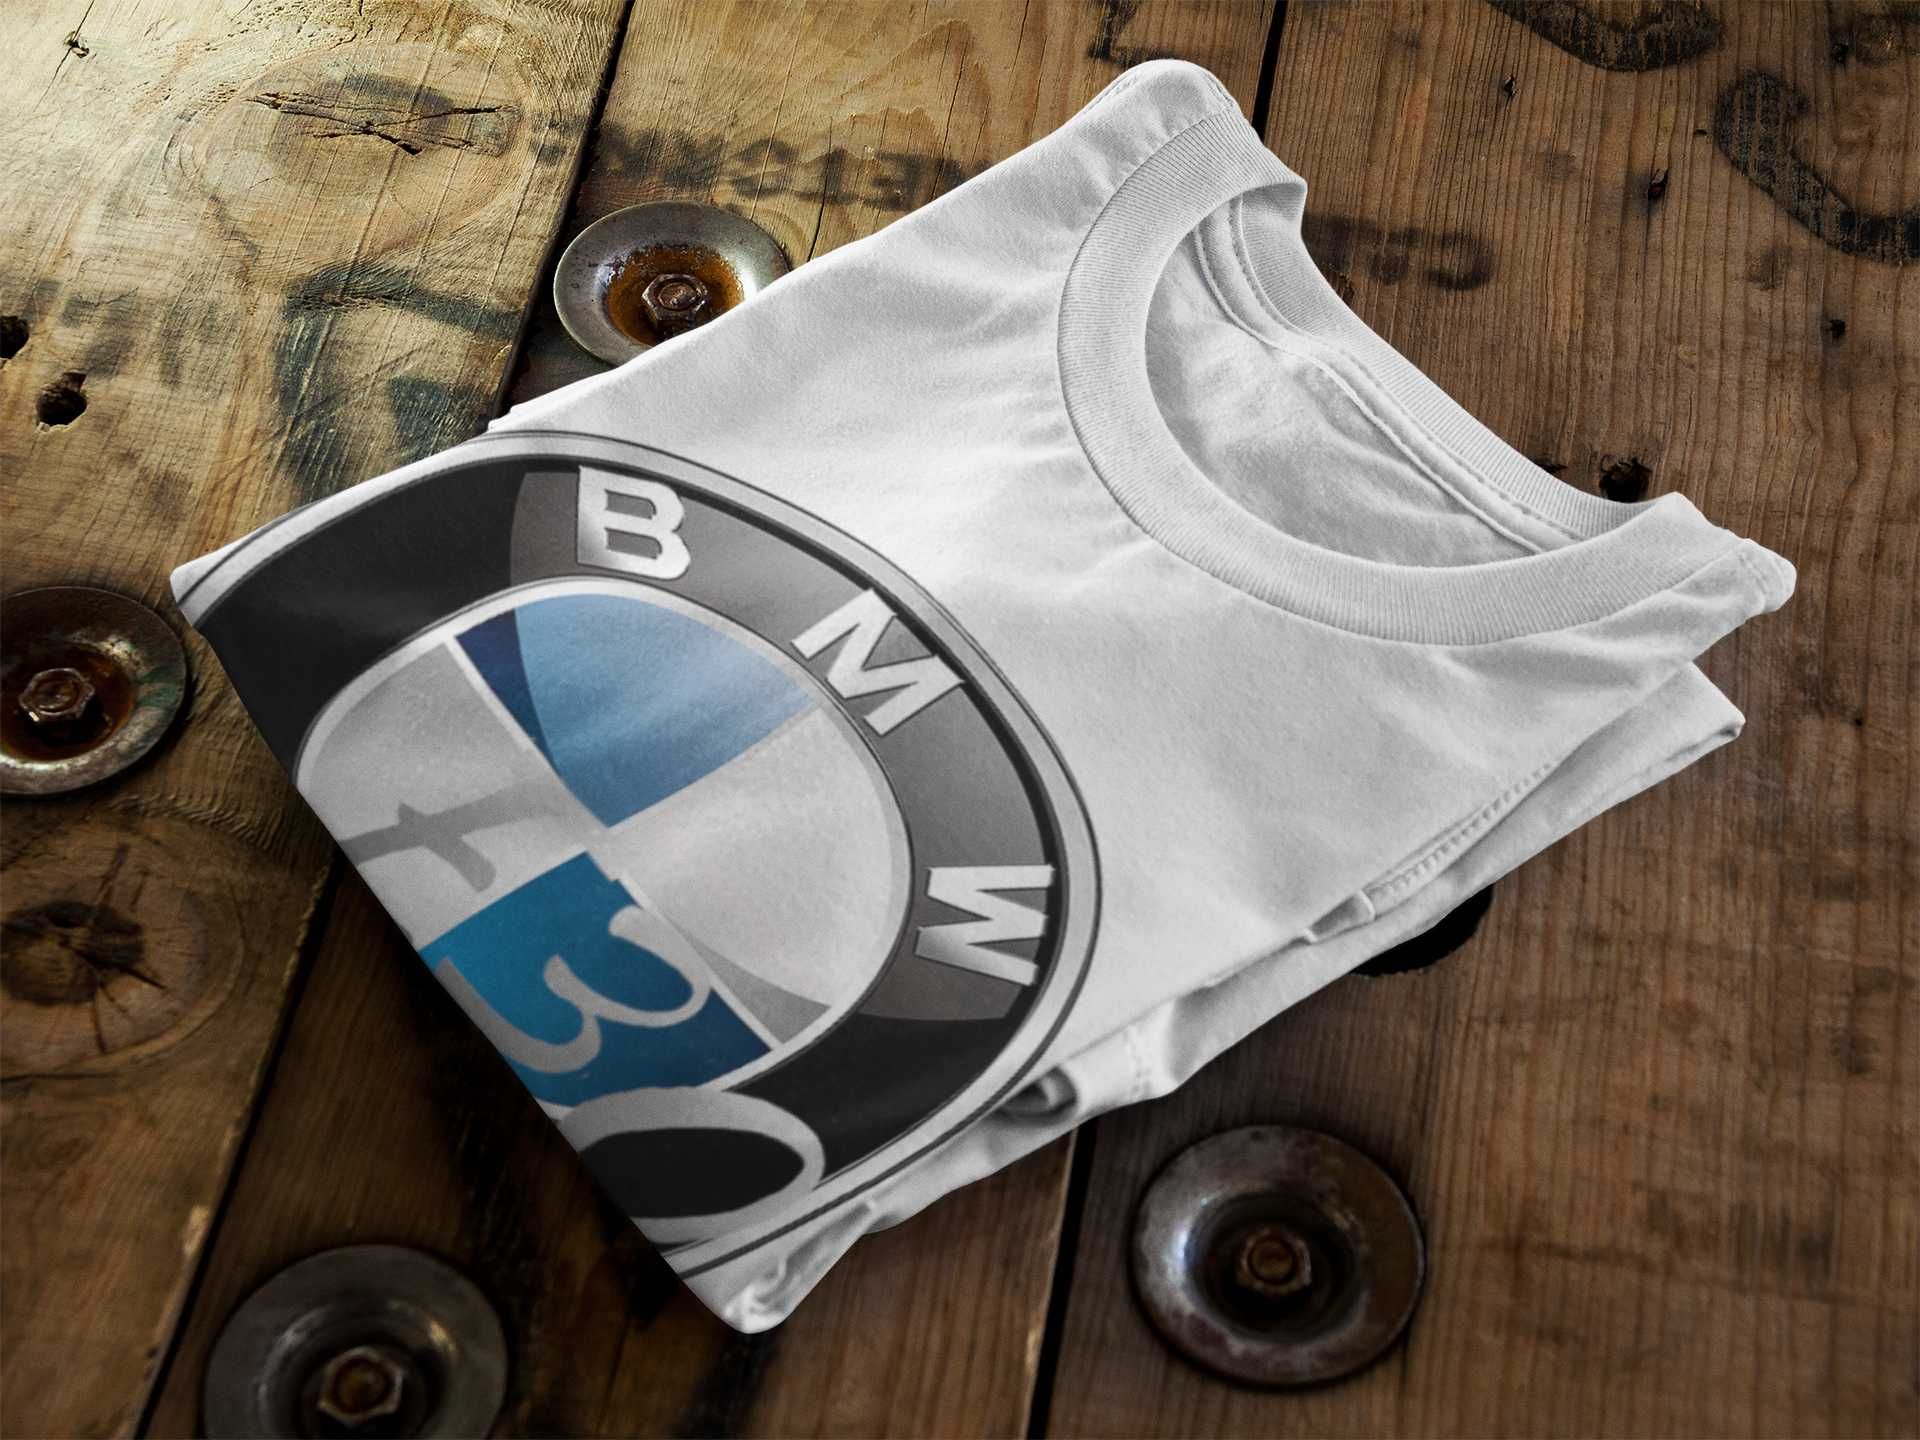 T-shirt 100% Algodão BMW E30